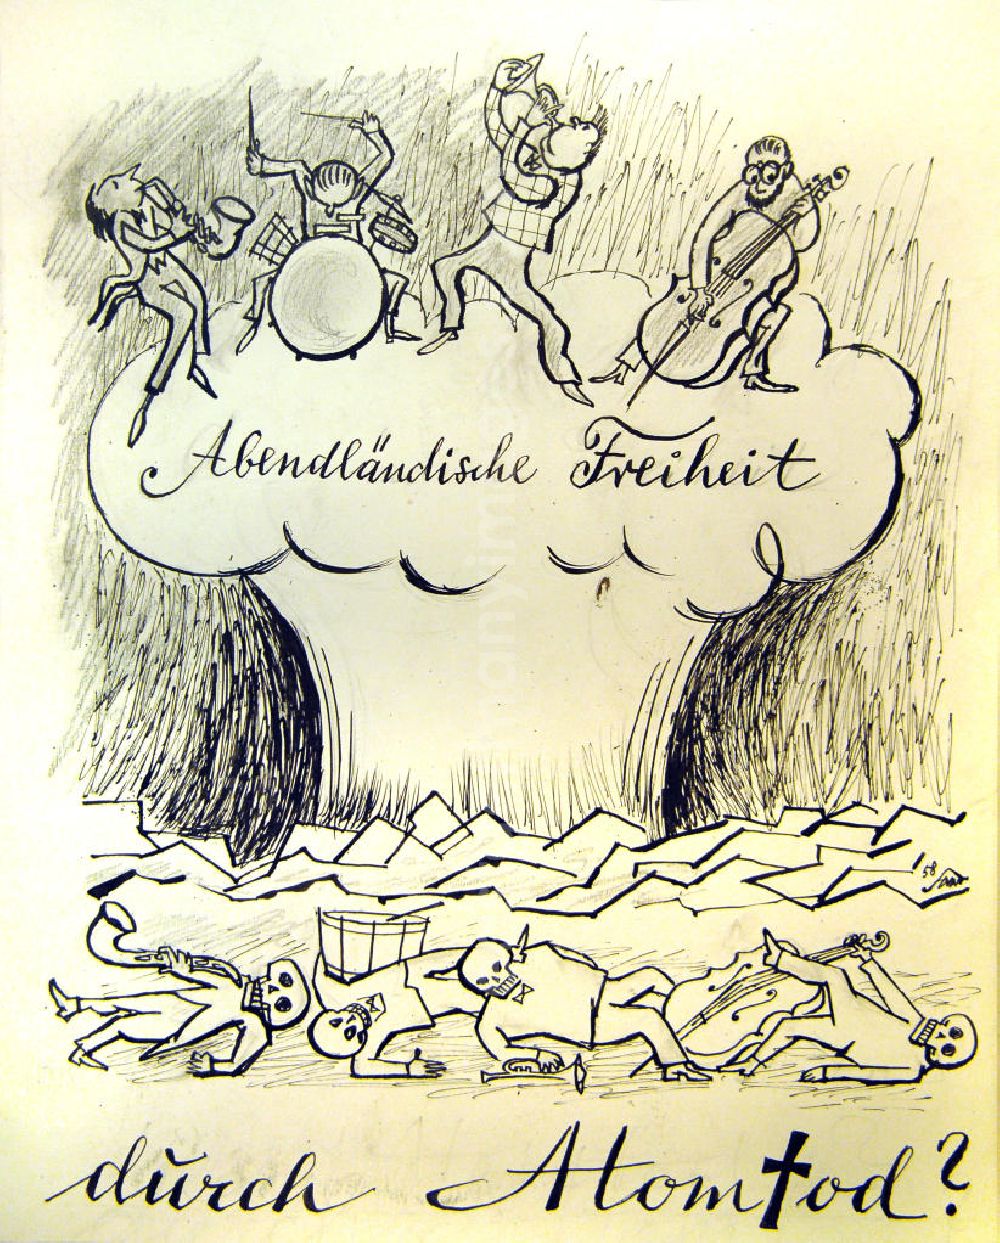 GDR picture archive: Berlin - Zeichnung von Herbert Sandberg Abendländische Freiheit durch Atomtod? aus dem Jahr 1958, 27,5x35,5cm Bleistift und Feder, handsigniert. Im Vordergrund: vier Körper mit Totenköpfen/ Skelette liegen auf dem Boden, sie halten Instrumente, wie Saxophon, Trommel, Trompete und Kontrabass in ihren Händen; dahinter: eine Explosionswolke/ ein Atompilz, darauf spielen vier Personen Saxophon, Schlagzeug, Trompete und Kontrabass.